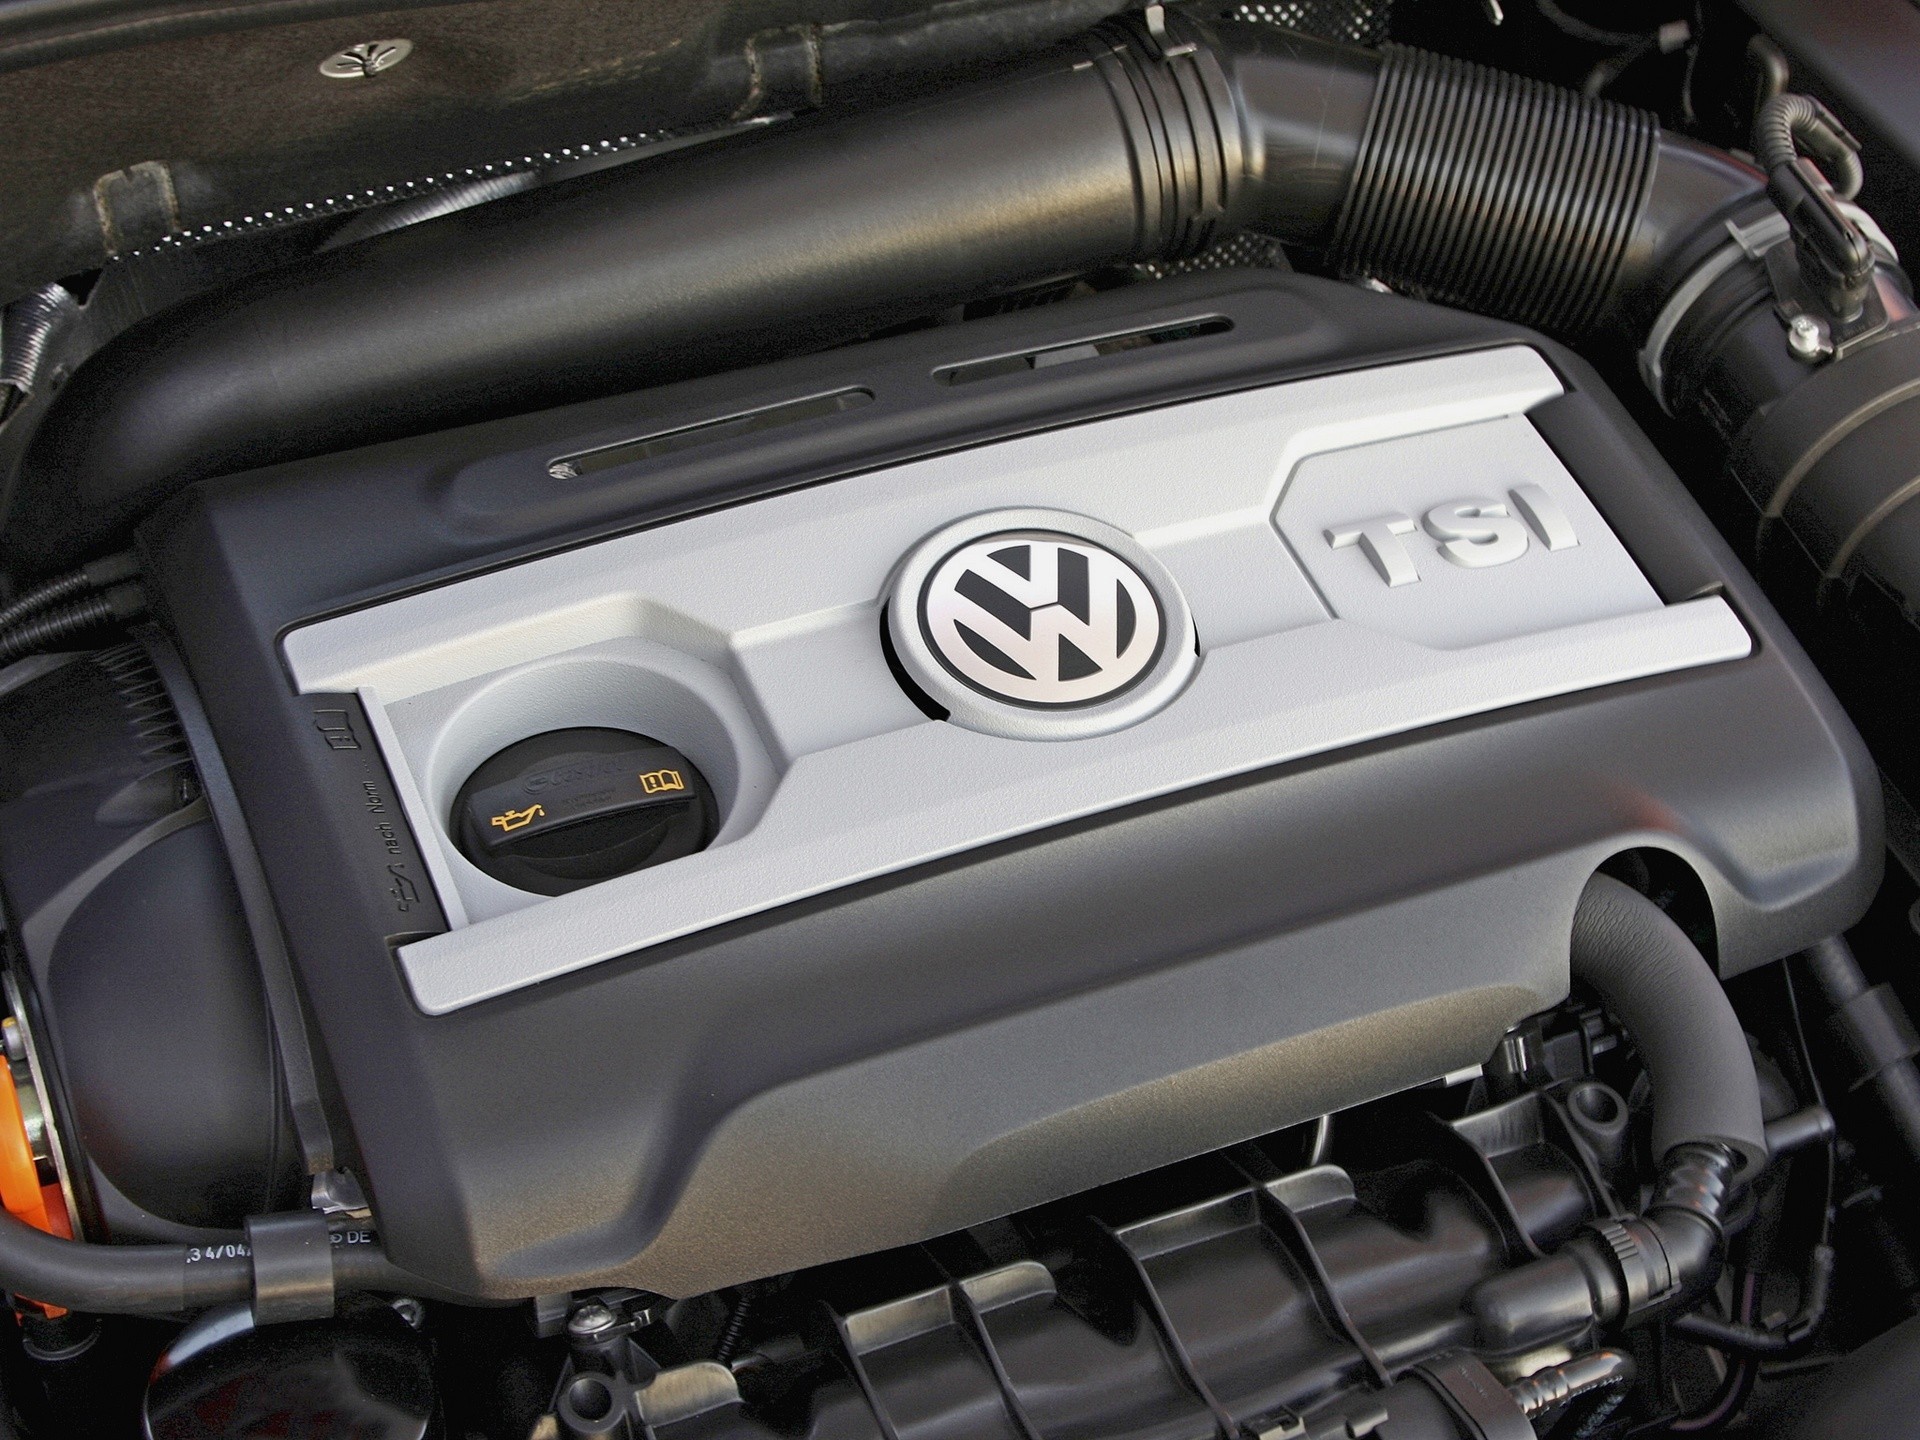 Mesin Volkswagen 1.8 TSI / TFSI - konsumsi bahan bakar rendah sareng seueur minyak. Naha mitos ieu tiasa dileungitkeun?